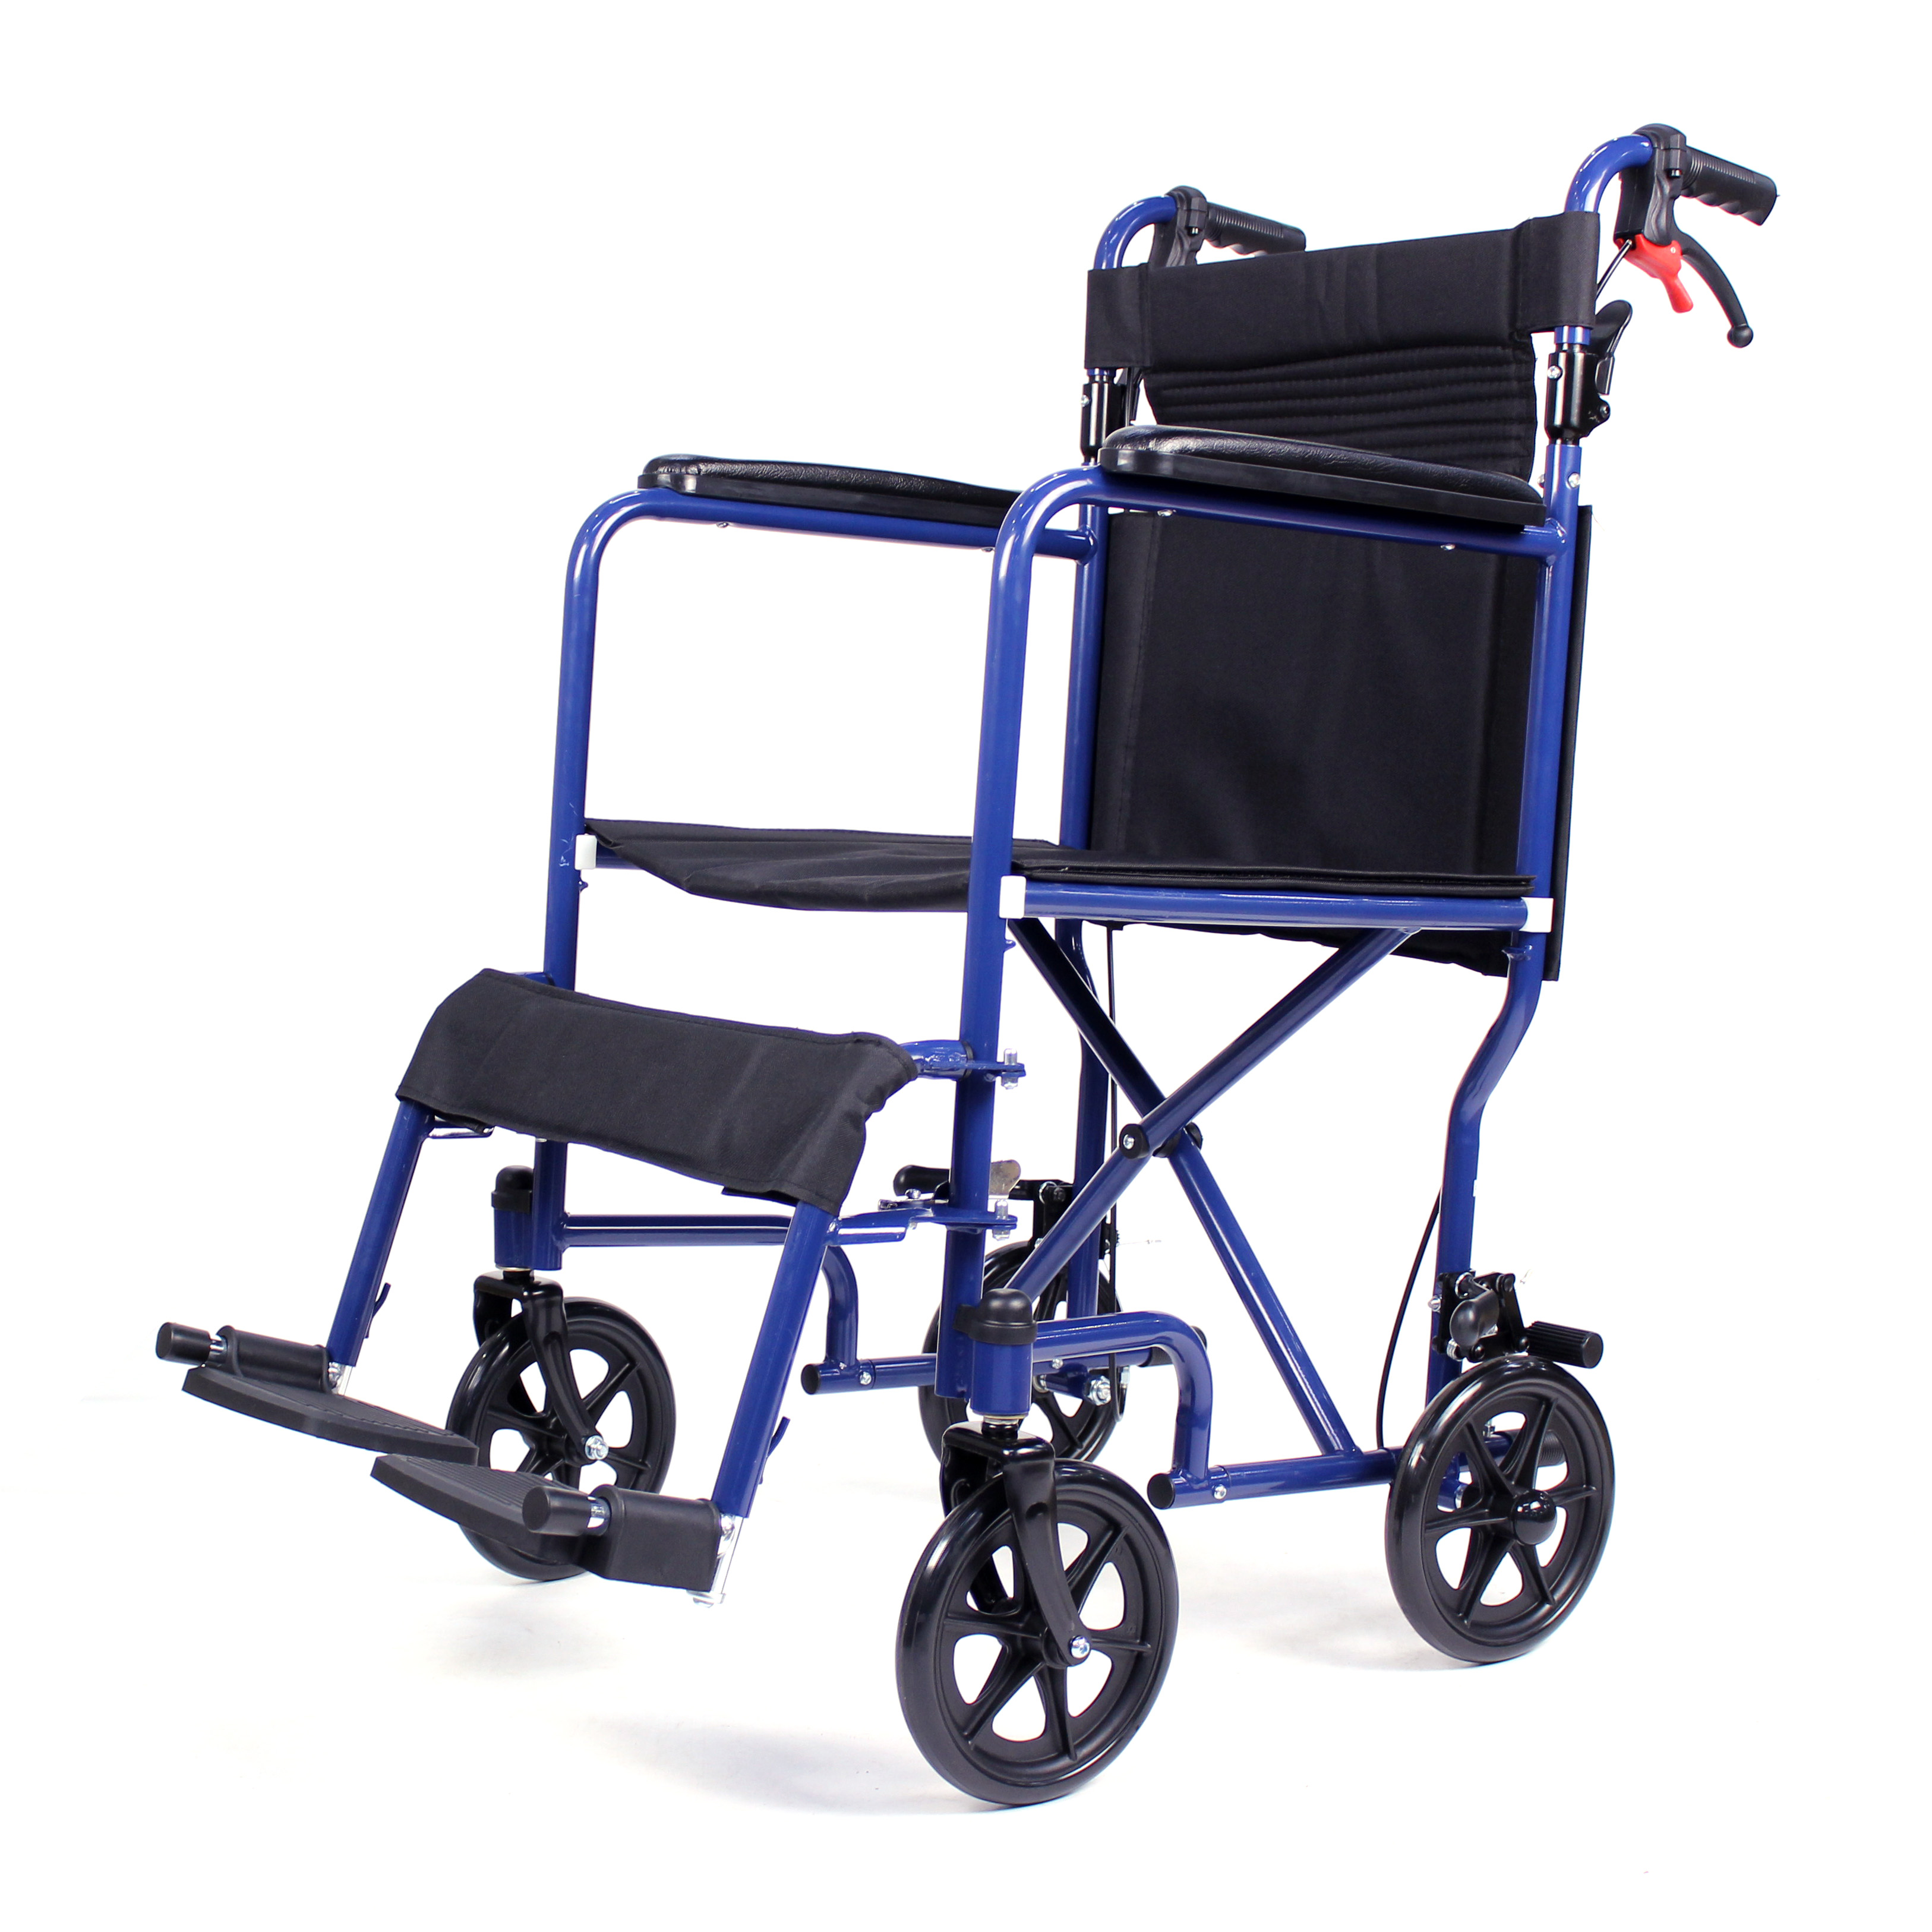 معدات العلاج الطبيعي مصنع الصانع جودة كرسي متحرك يدوي خفيف الوزن للمعاقين